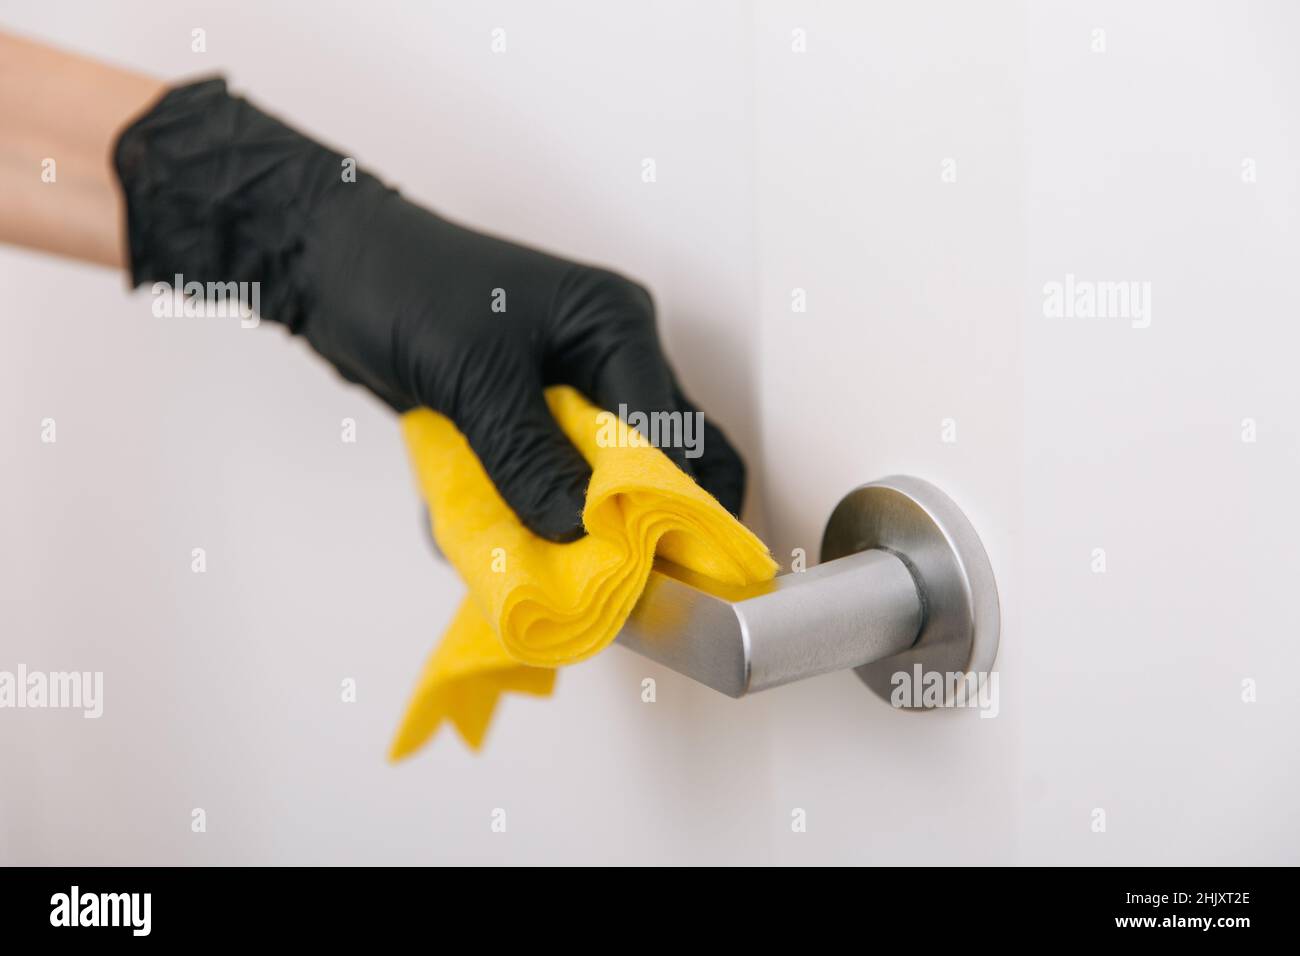 Limpieza del tirador de la puerta con un paño amarillo en guantes negros. Mano de mujer usando toalla para la limpieza. Desinfección en hospitales y espacios públicos contra corona Foto de stock